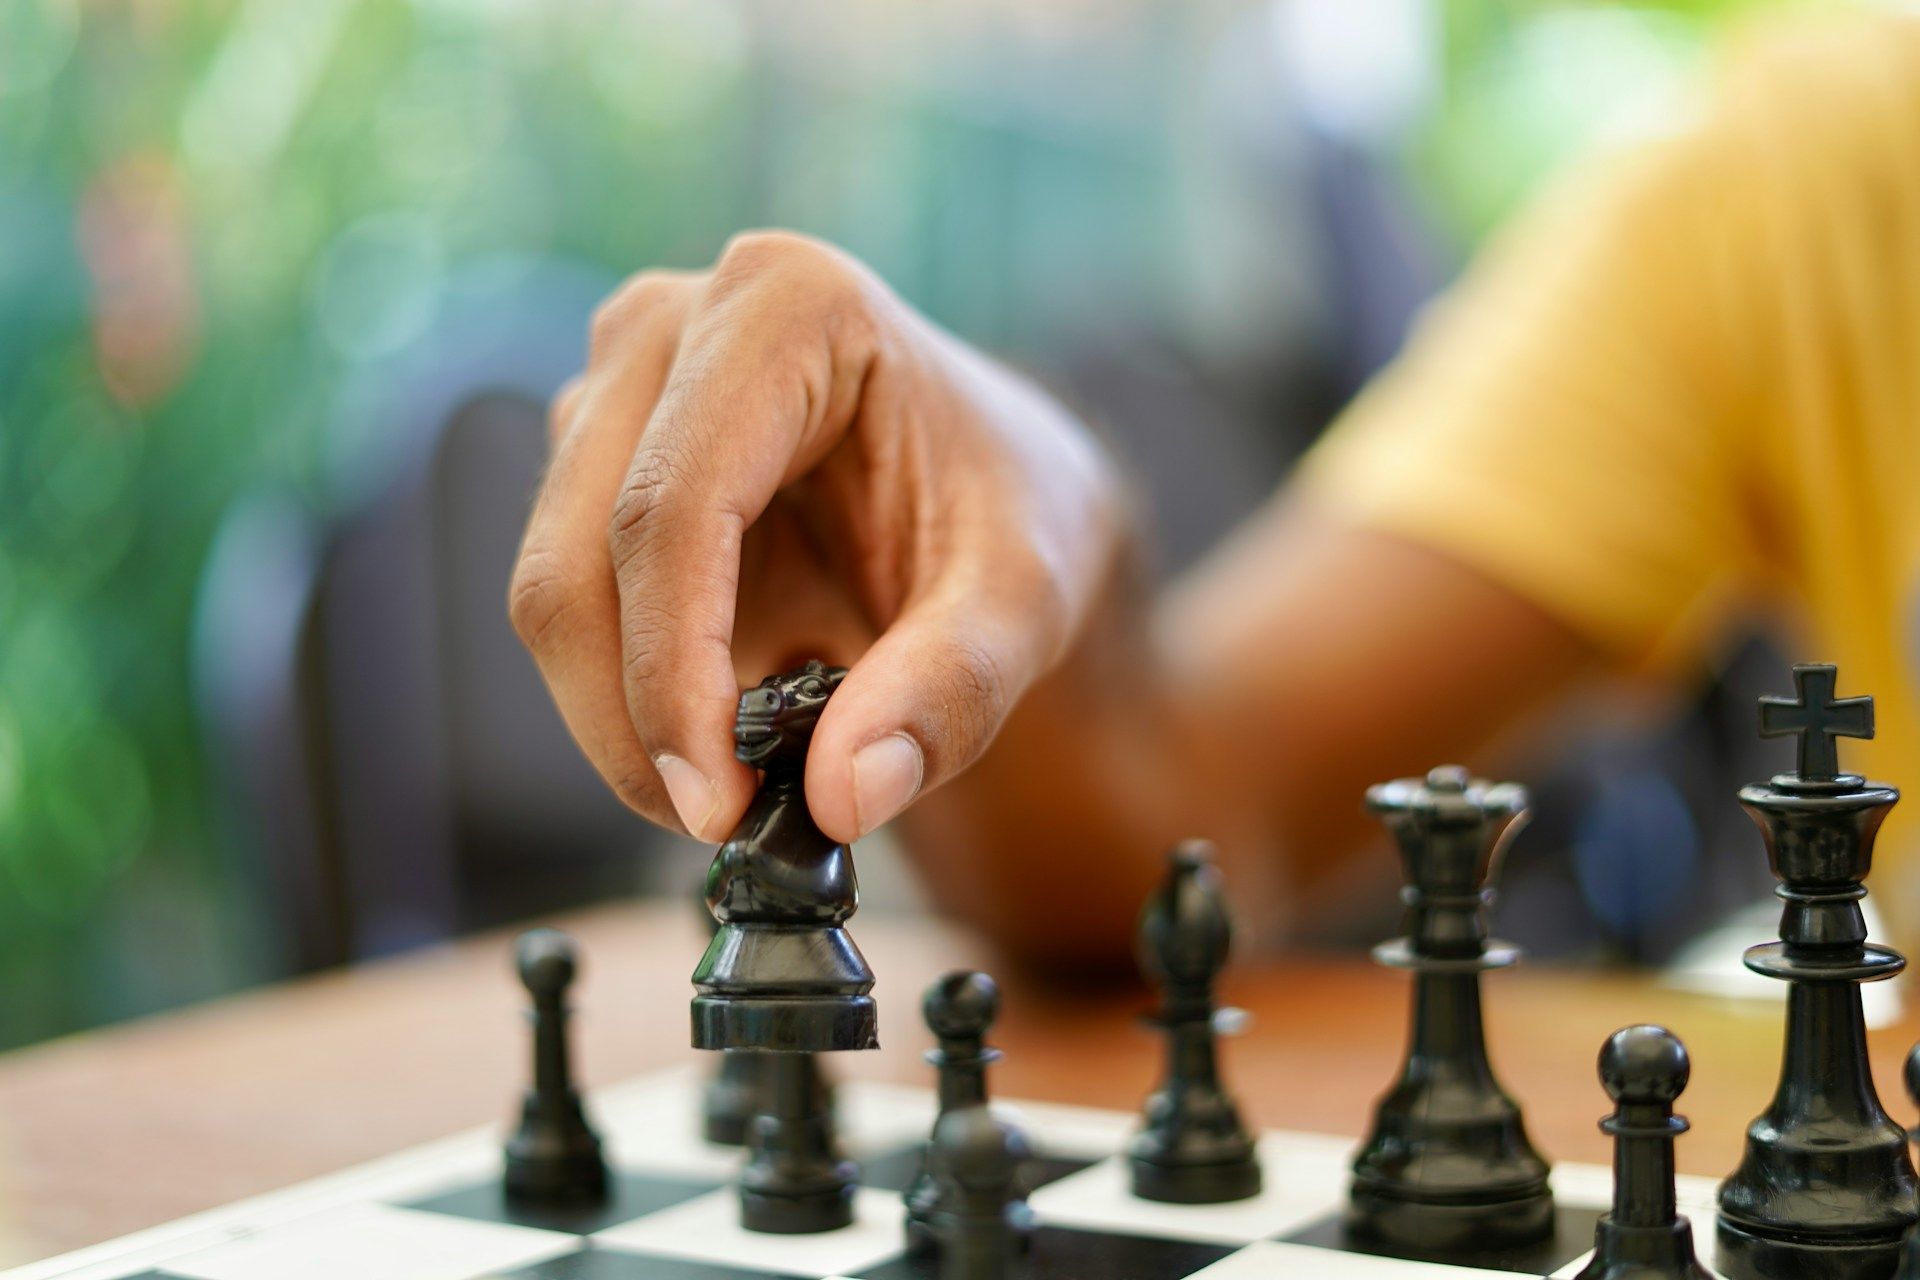 Стратегии и обучение в онлайн-шахматах - профессиональные методы совершенствования